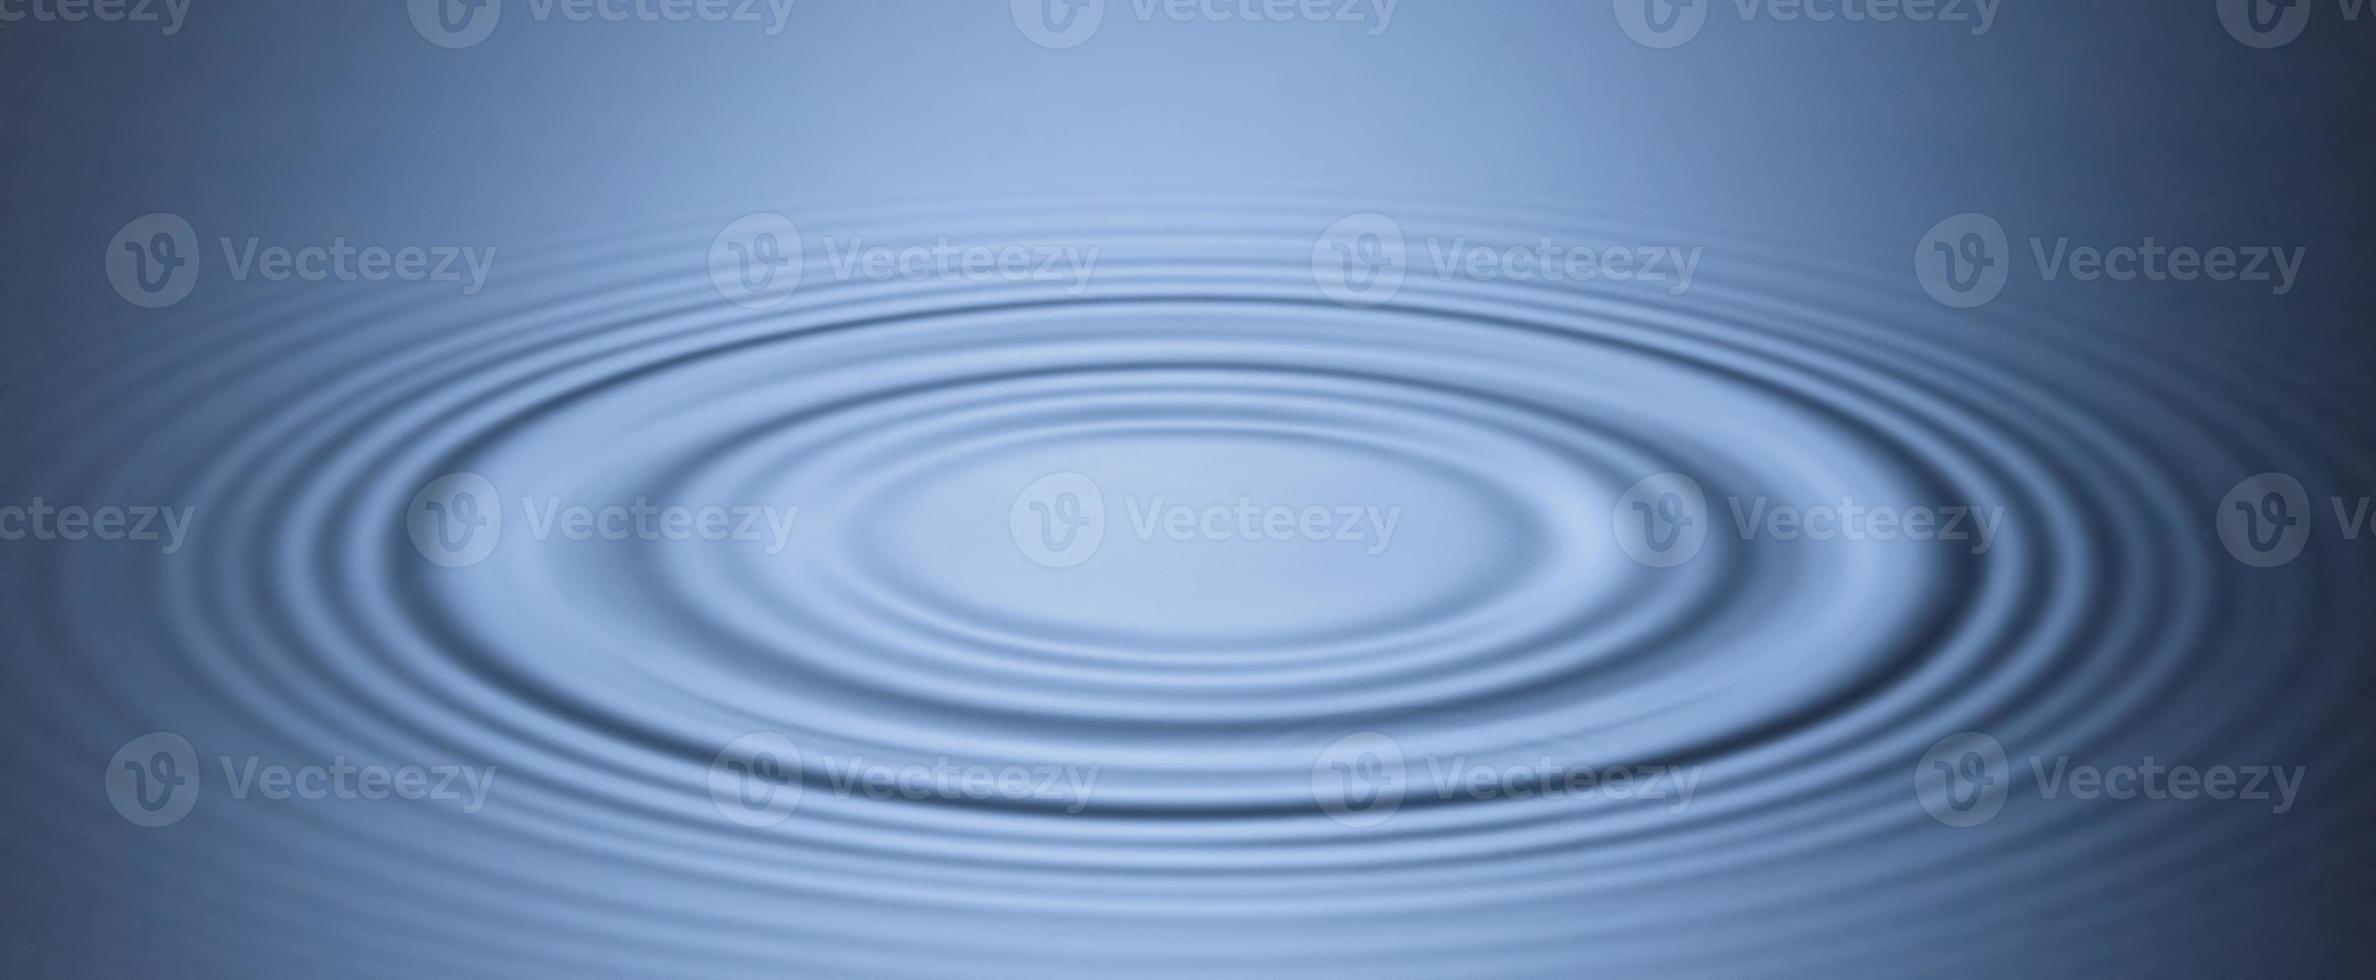 círculos suaves de fondo azul en el agua. foto